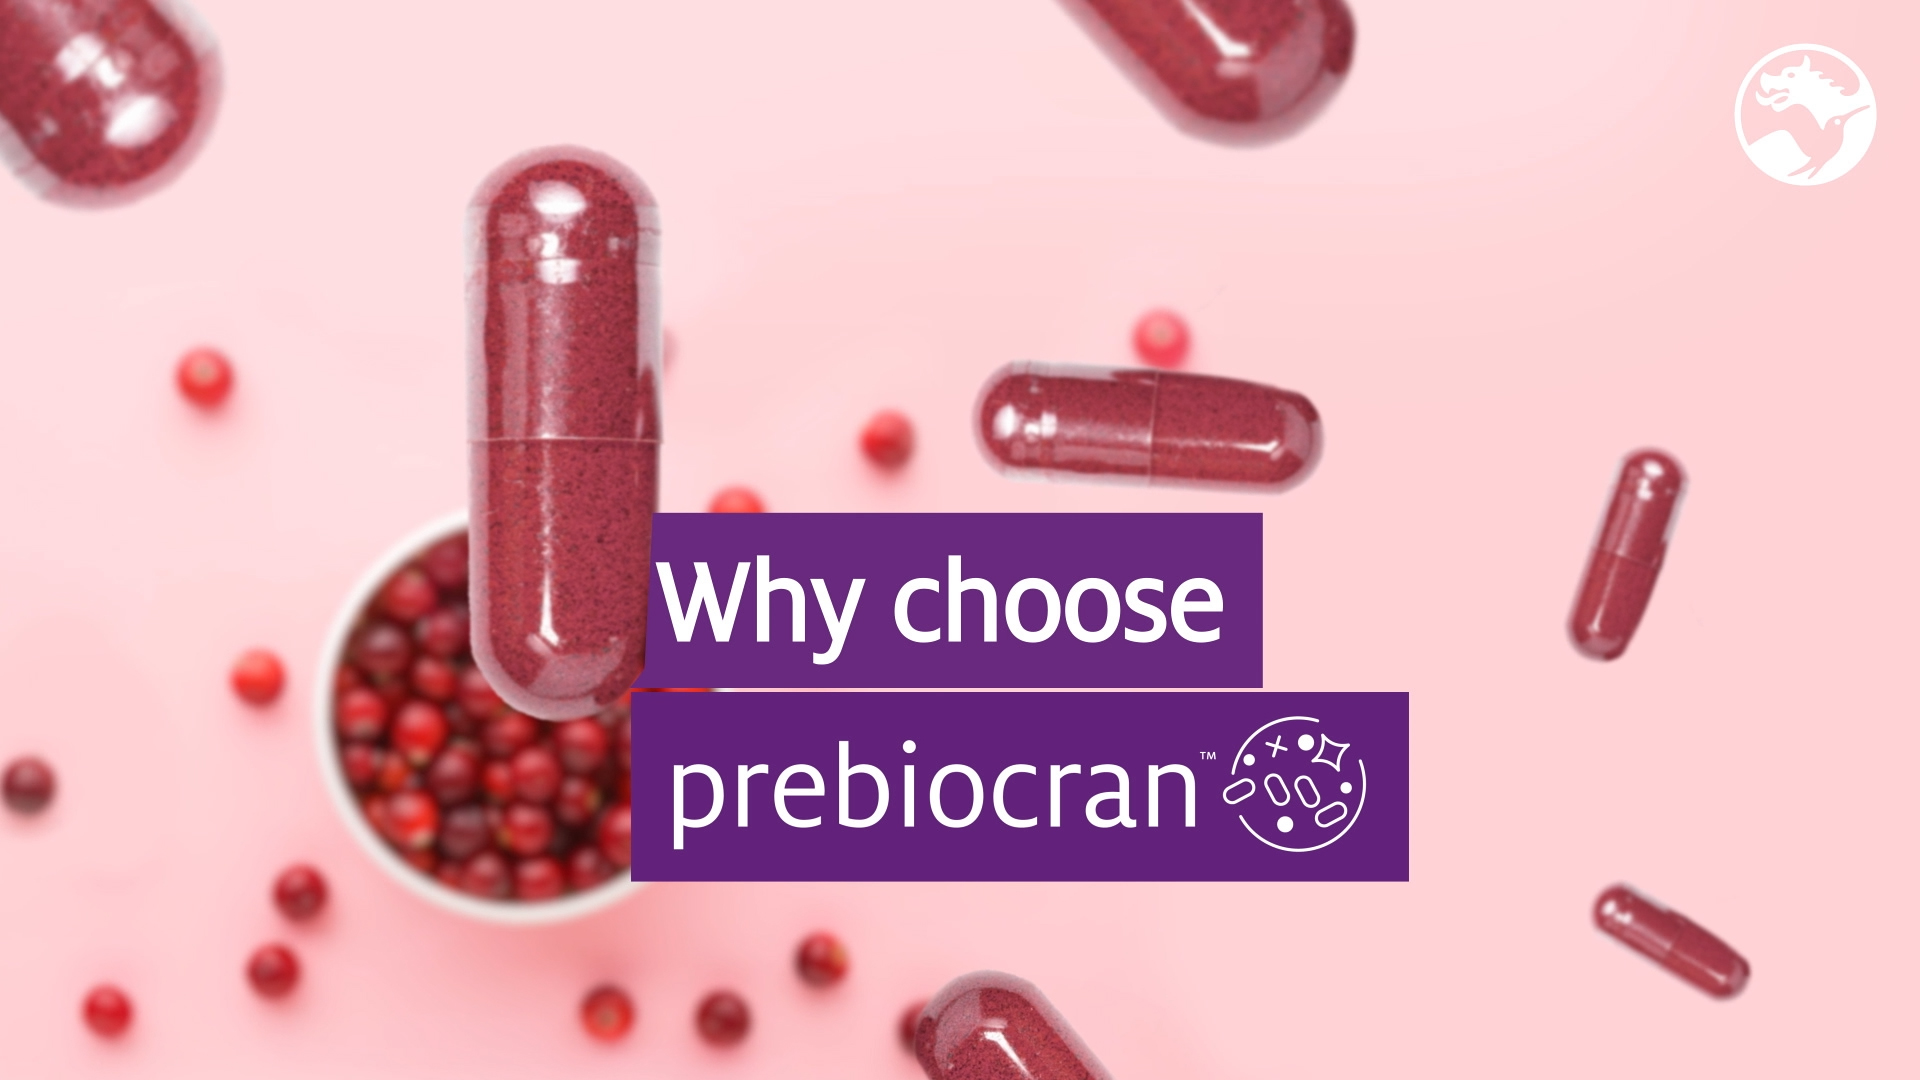 Prebiocran™ for gut health